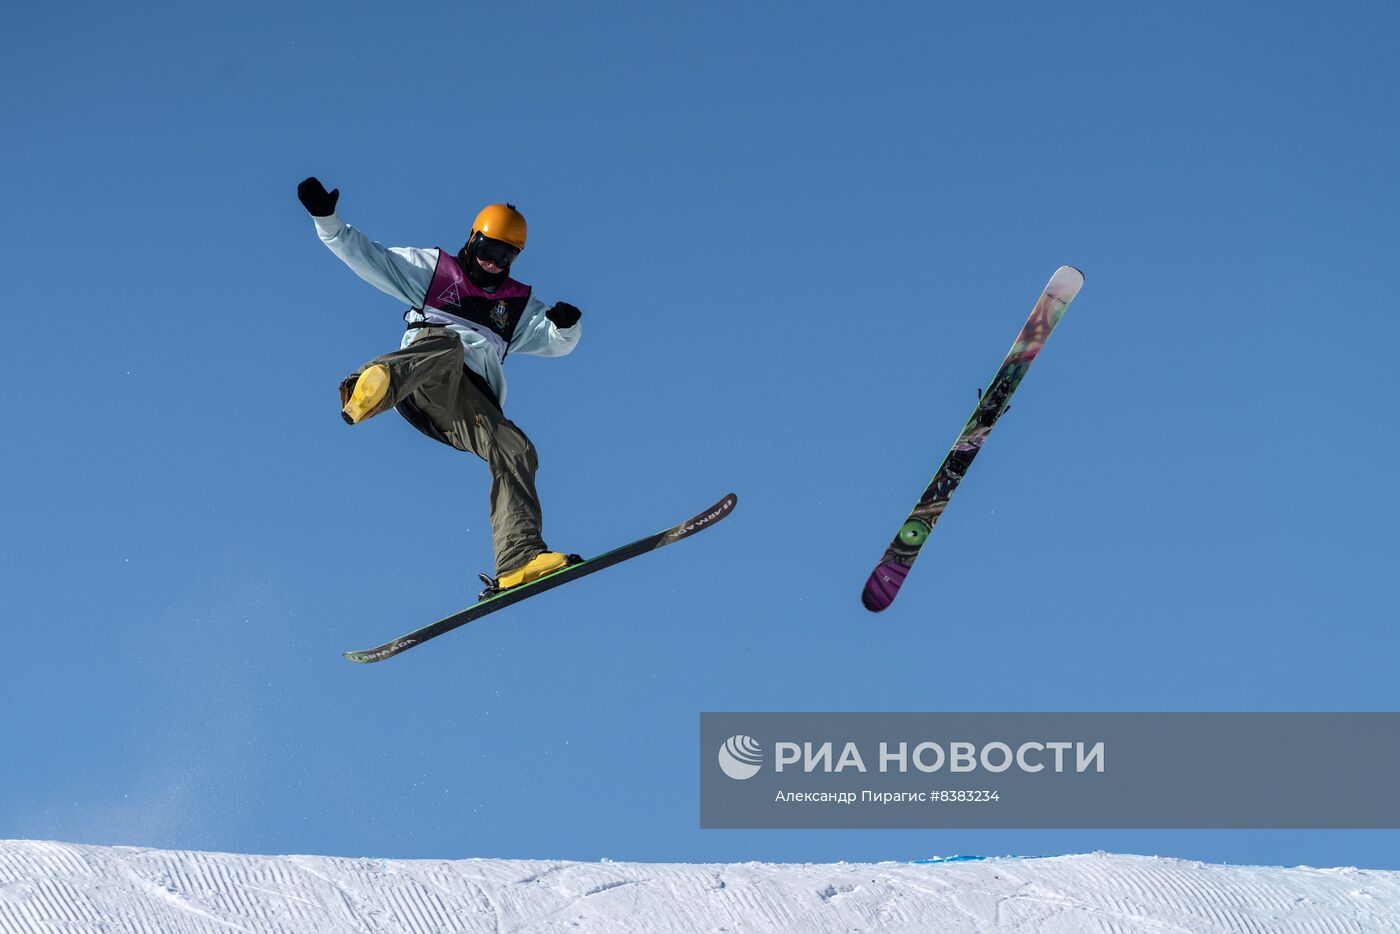 Фестиваль зимних видов спорта "Снежный путь" в Петропавловске-Камчатском